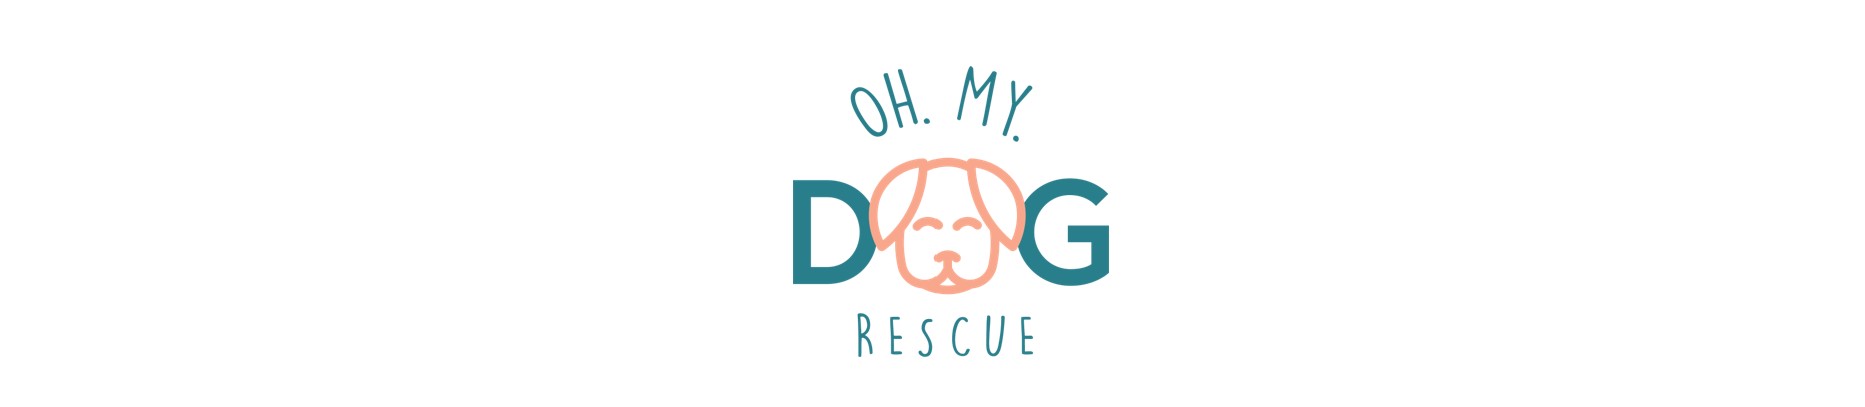 Oh My Dog Rescue – Iowa